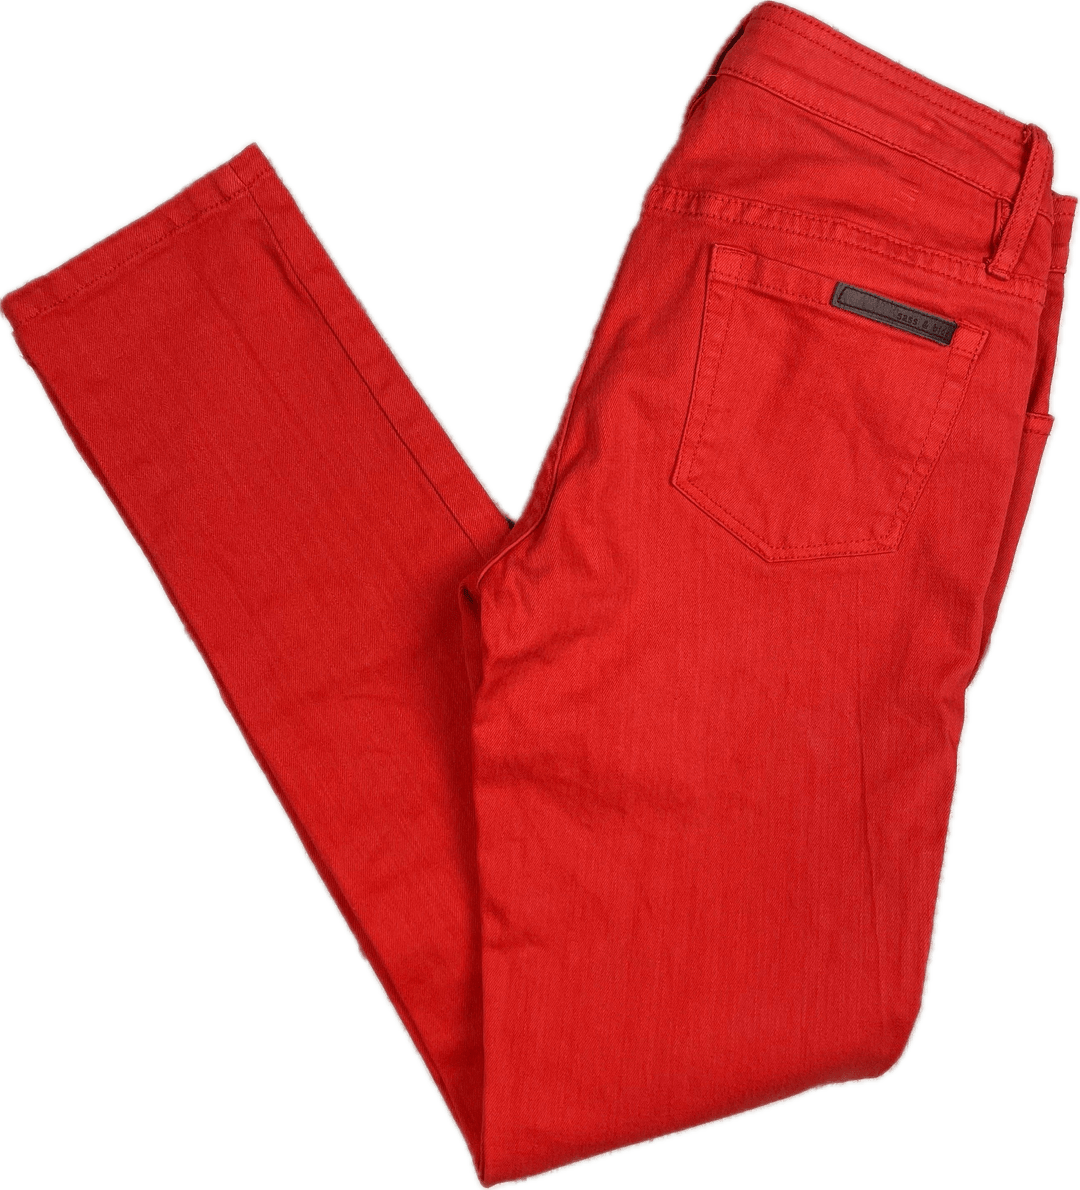 Sass & Bide 'Stand & Deliver' Lovestate Burnt Orange Slim fit Stretch Jeans -Size 25 - Jean Pool